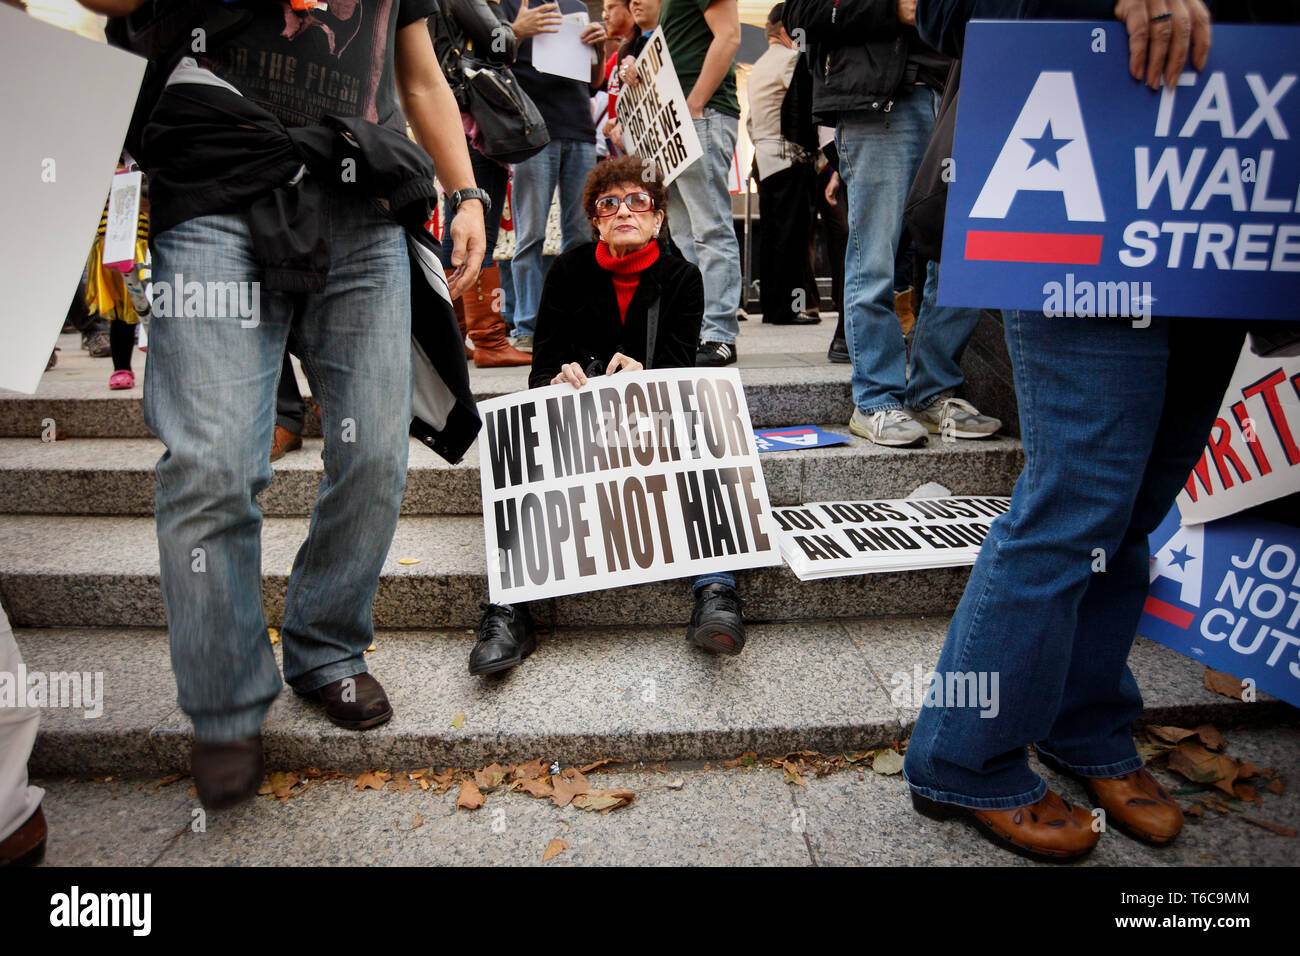 Eine Demonstrantin, die Demonstration von Besetzt die Wall Street orchestriert. Ihr Sternzeichen liest "Wir marschieren für Hoffnung nicht hassen". Die Besetzt die Wall Street demonstrierten gegen finanzieller Gier und Ungleichheit und die Frage der Ethik der Finanzwirtschaft. Stockfoto